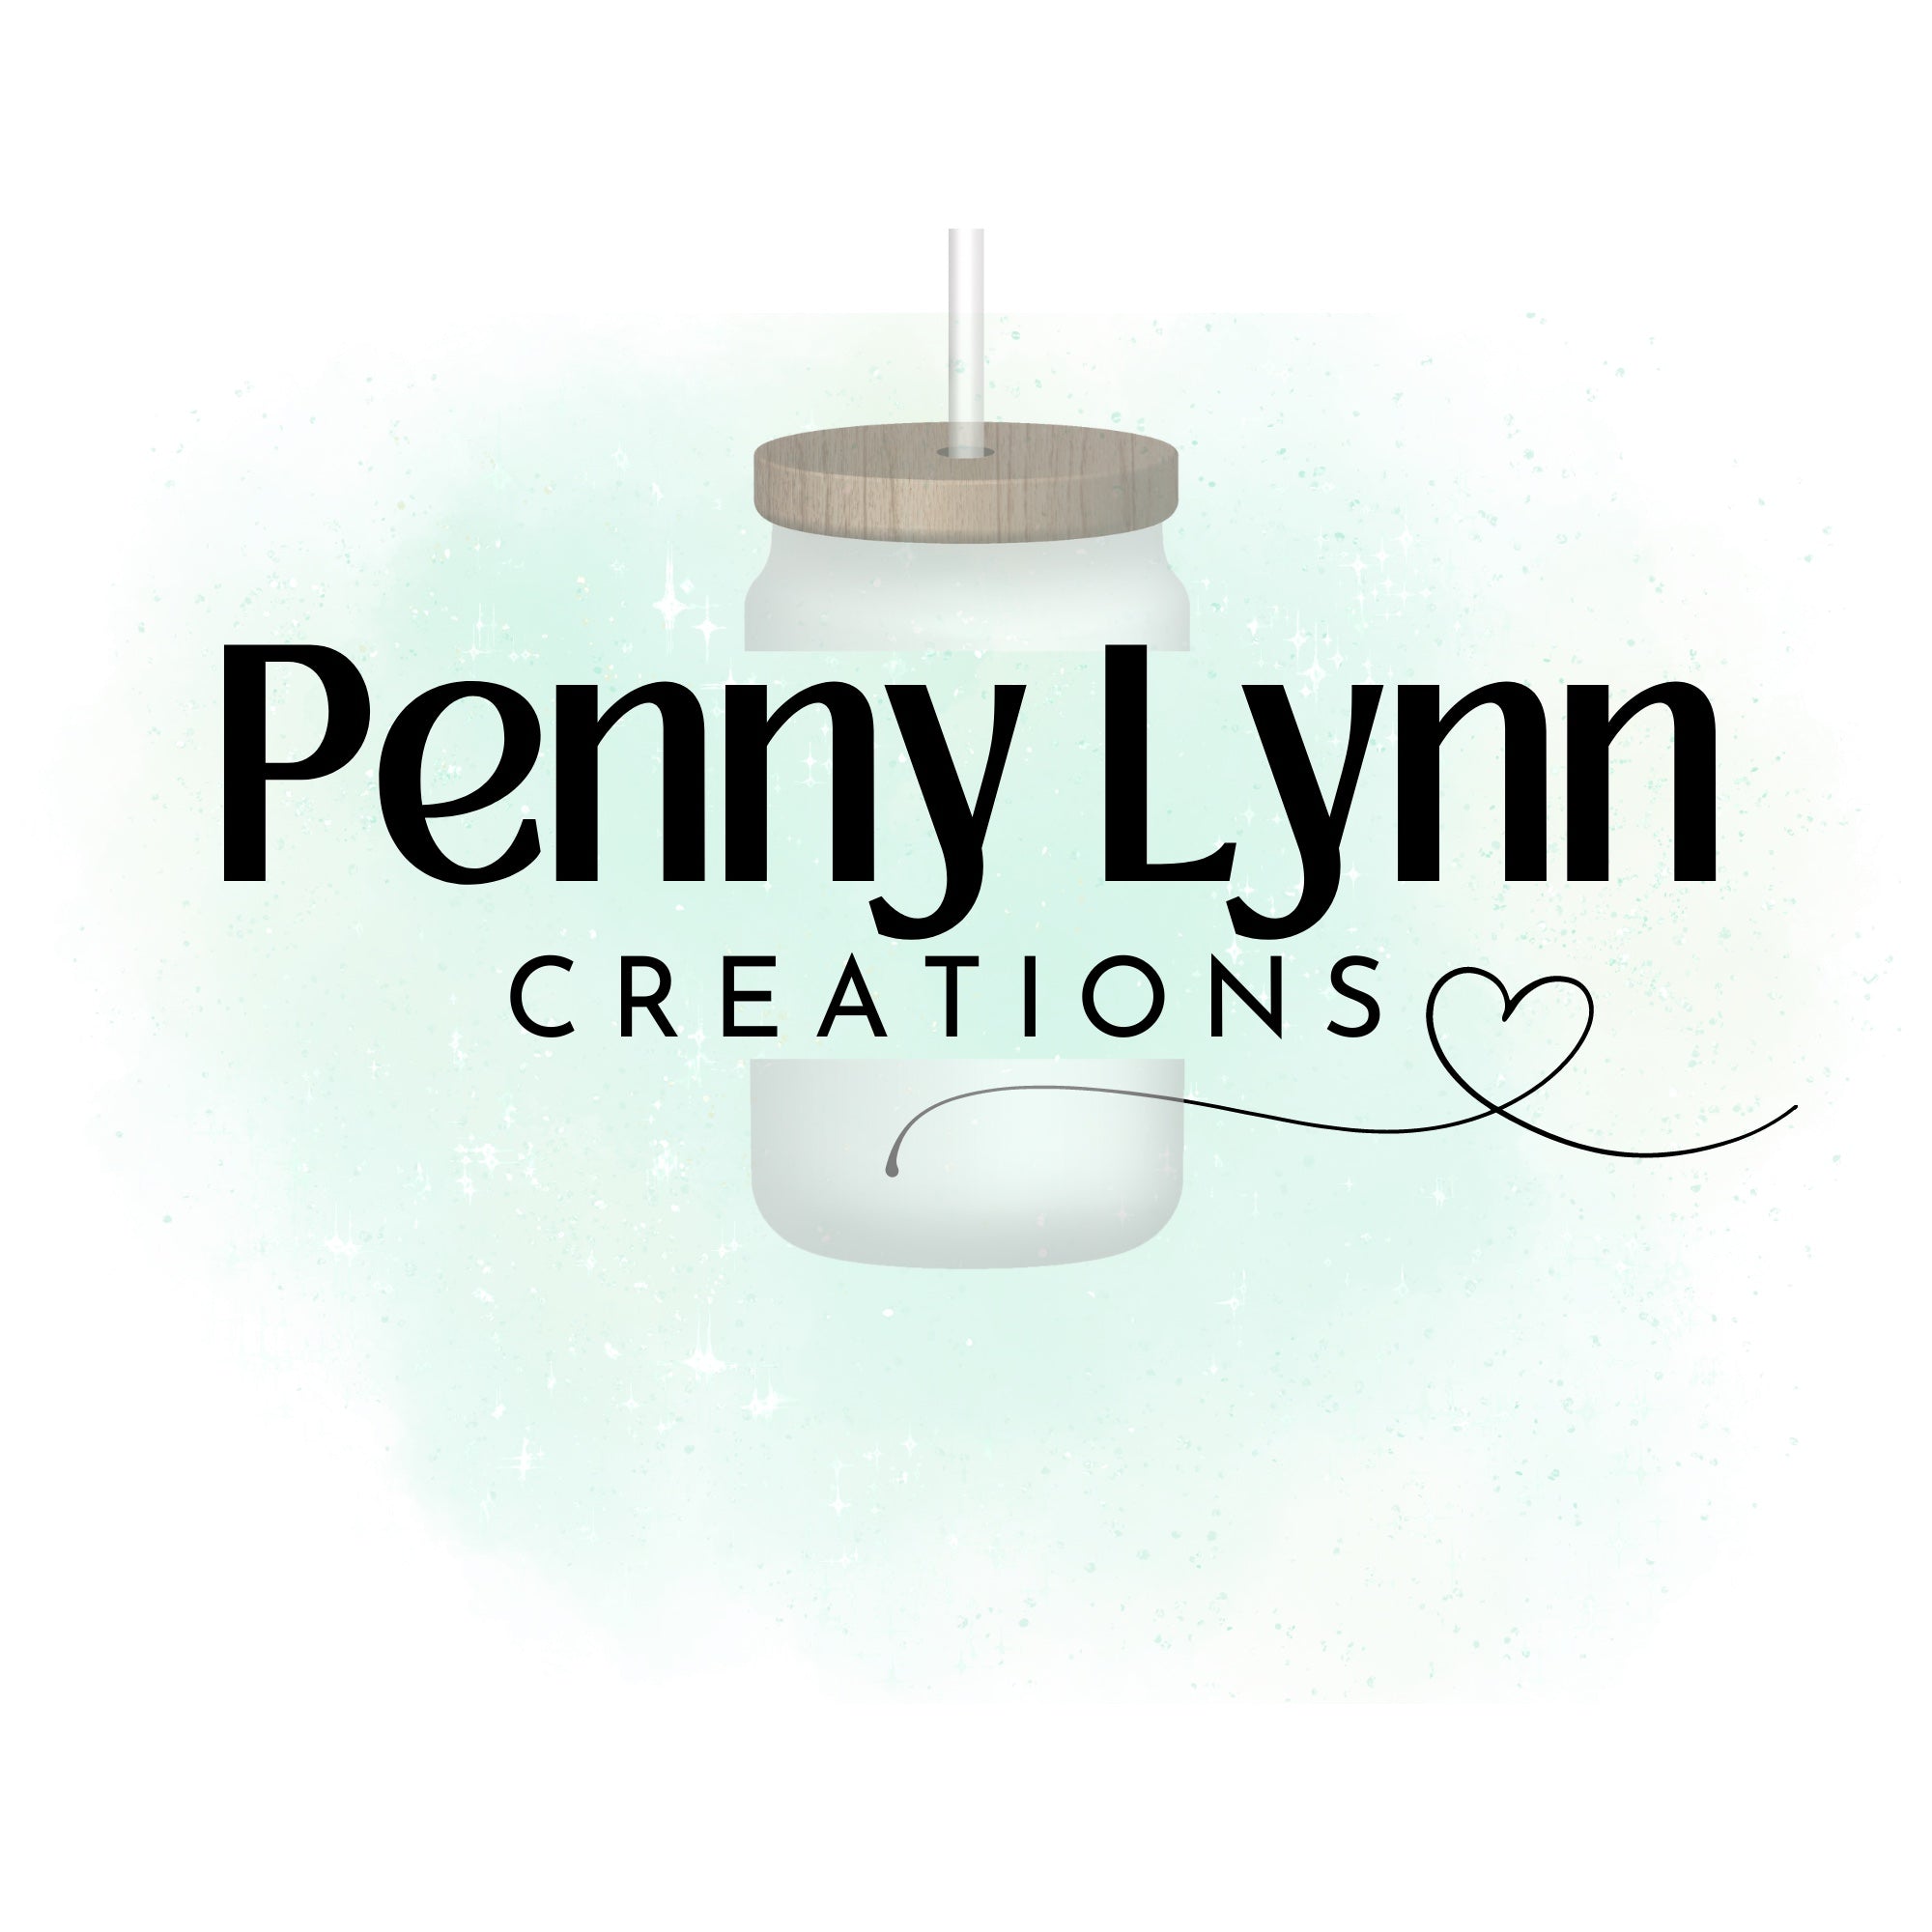 Penny Lynn Creations